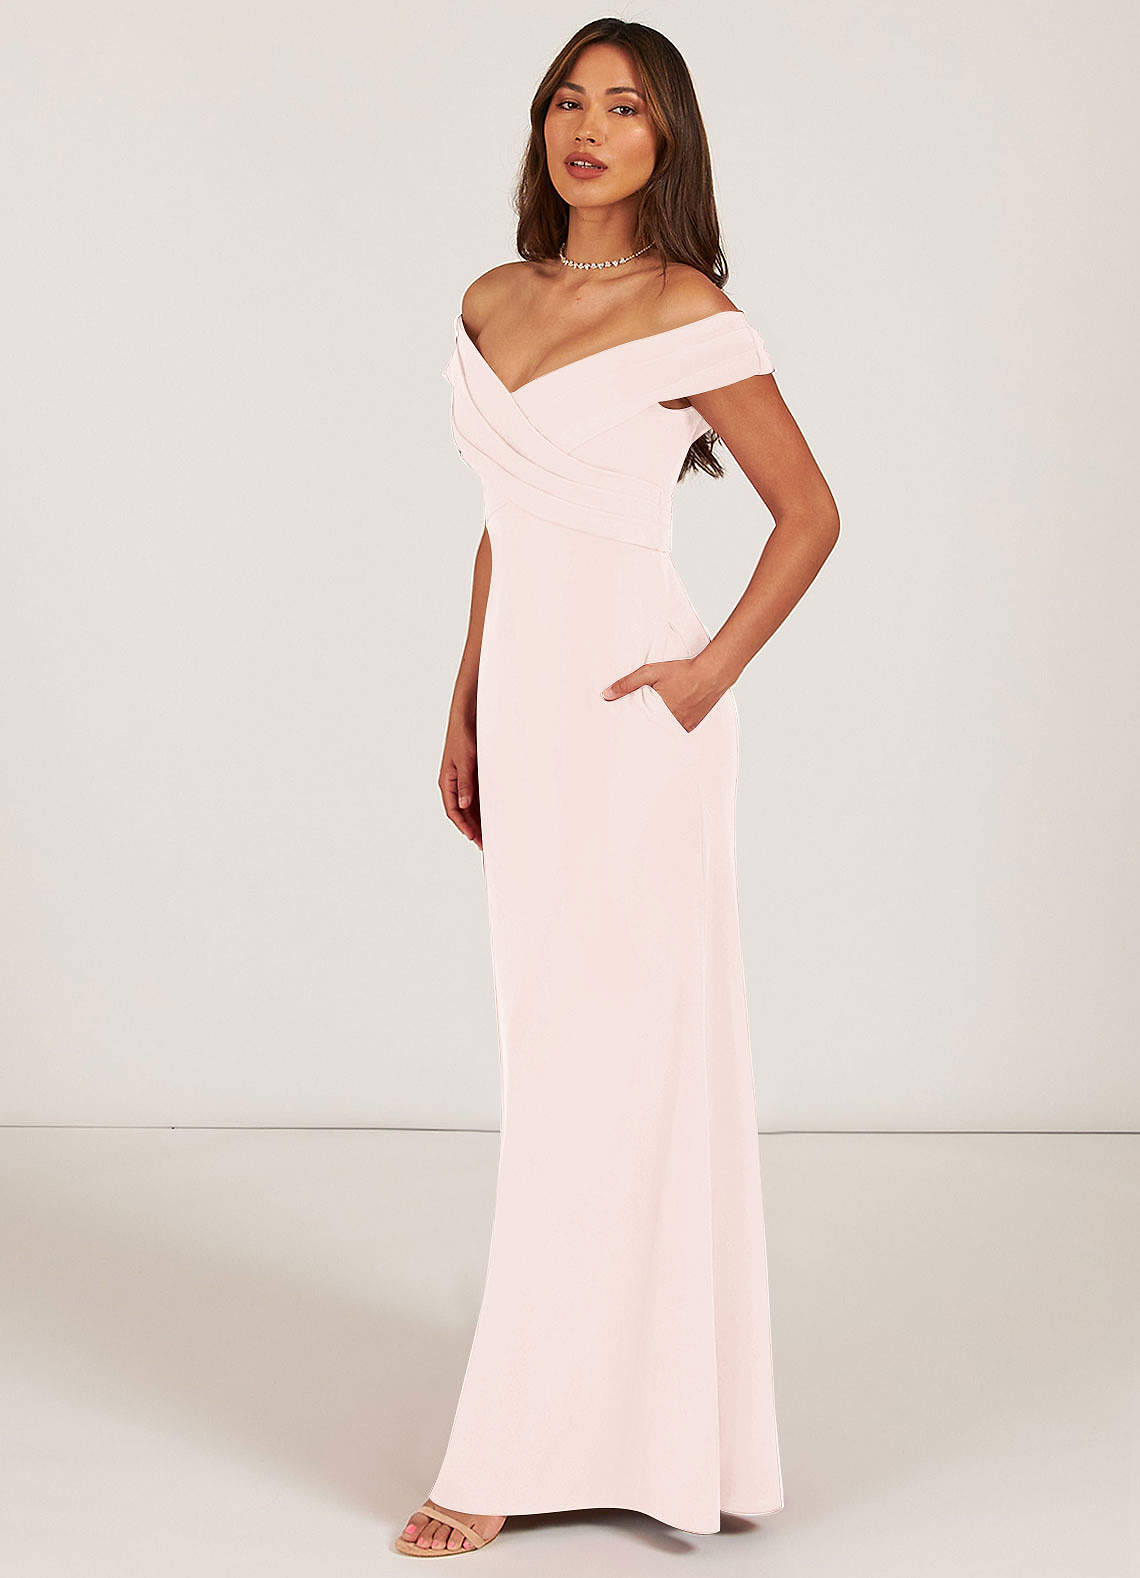 Azazie Evita Bridesmaid Dresses A-Line Off the Shoulder Stretch Crepe Floor-Length Dress image1